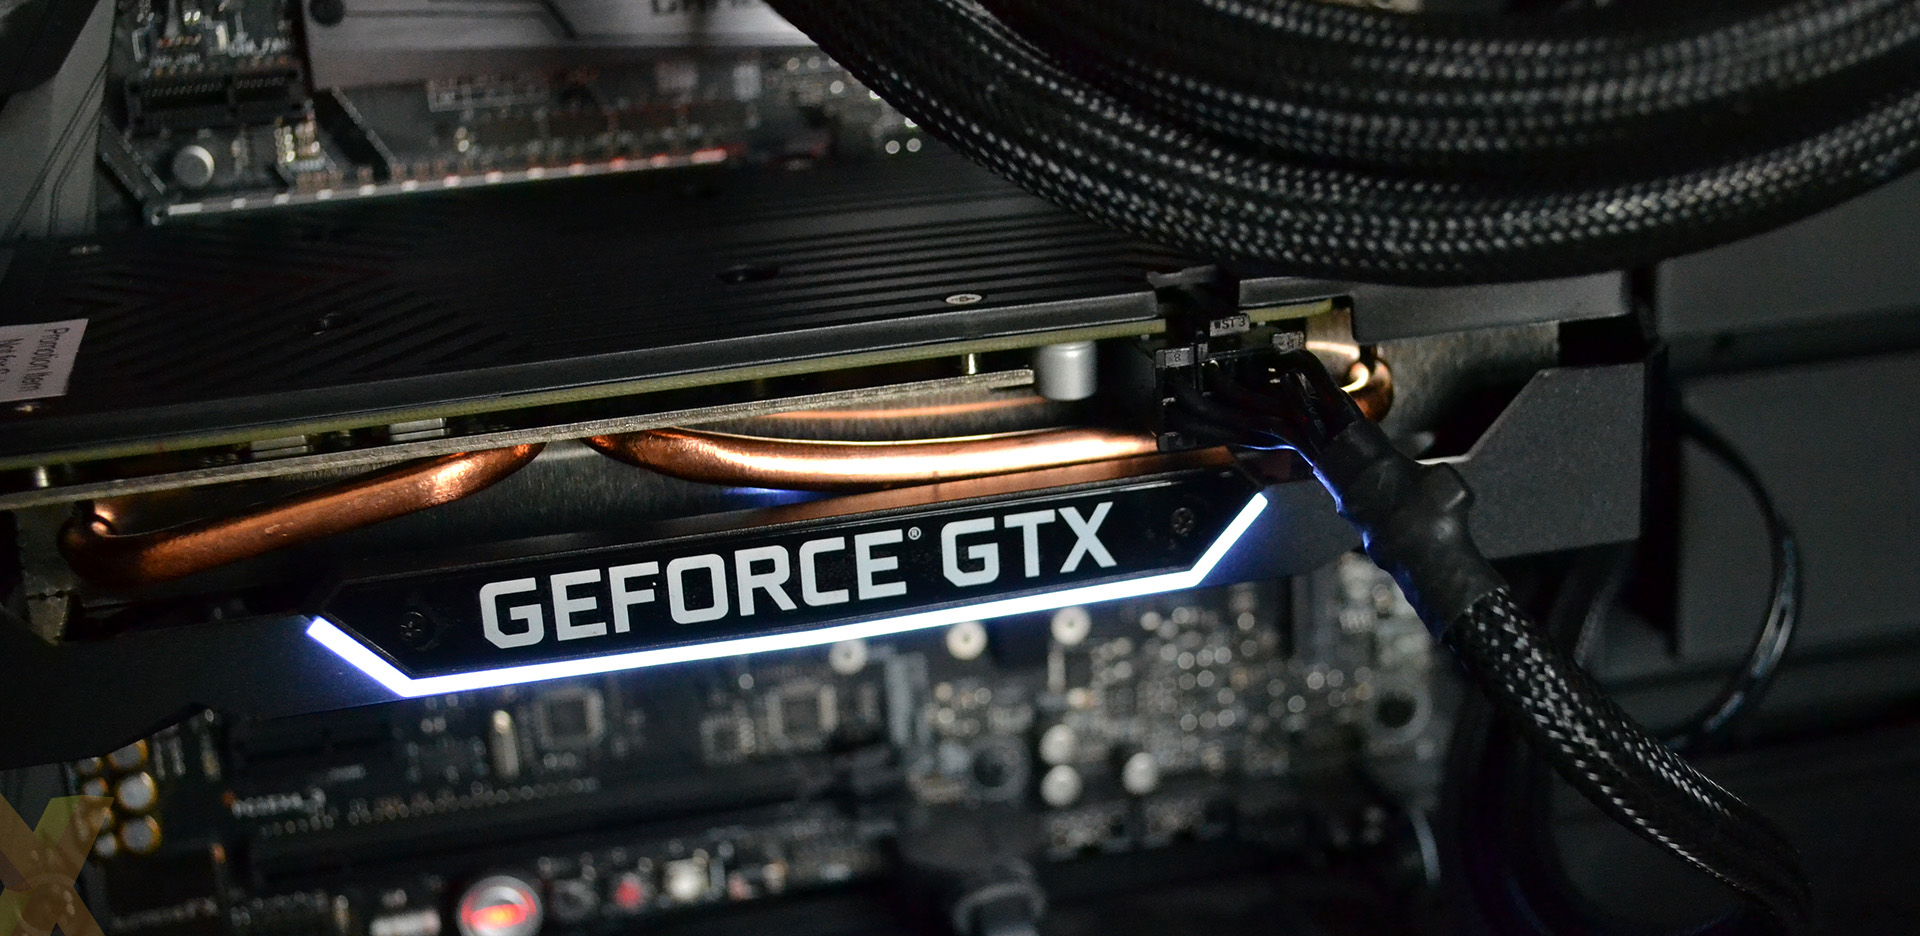 Review: Palit GeForce GTX 1660 Super GamingPro - Graphics - HEXUS.net